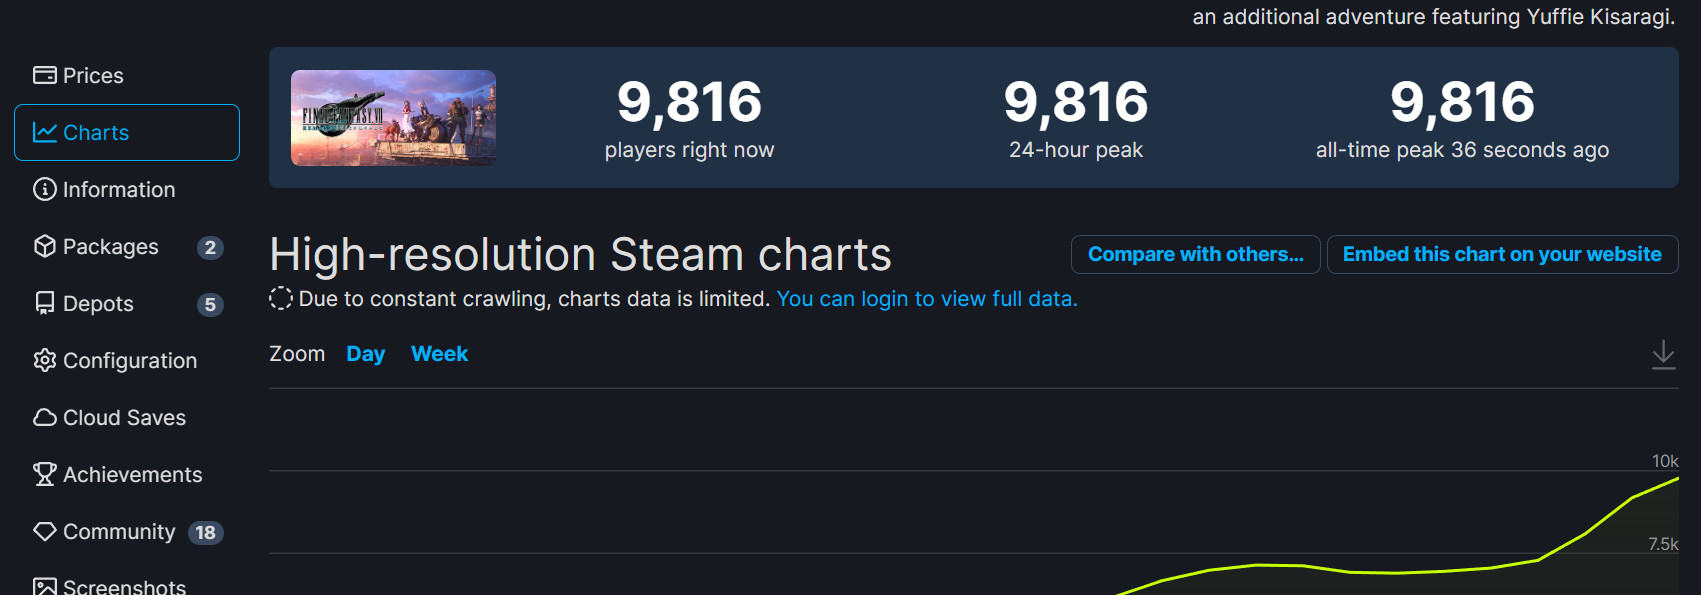 《太空戰士7：重製過渡版》Steam特別好評 登頂Steam熱銷榜